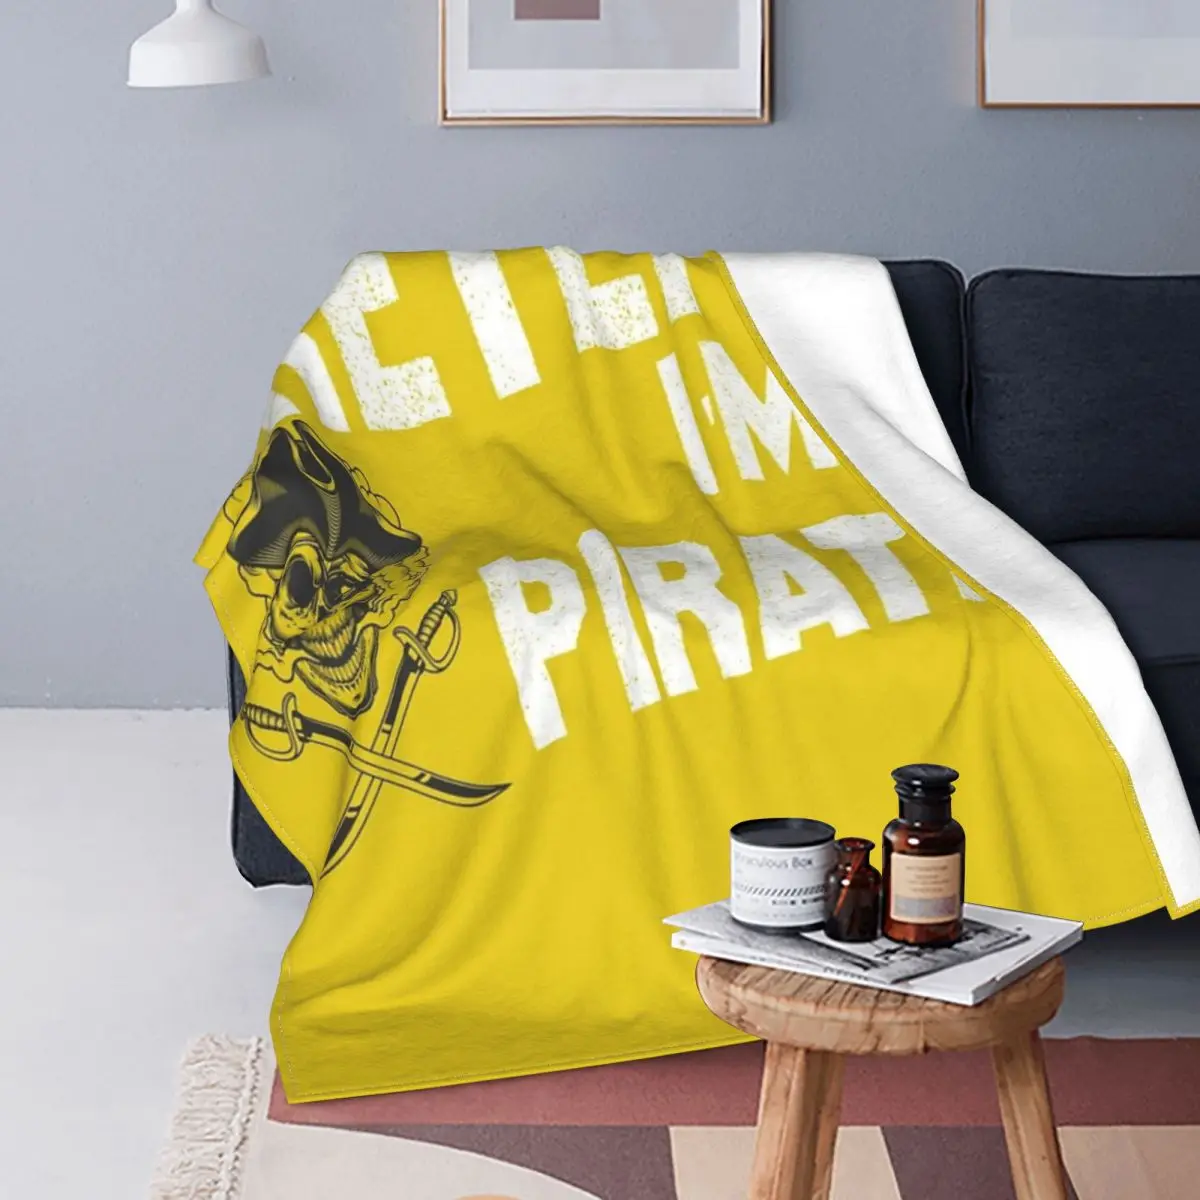 

Рубашка с рисунком пирата я а, 4 одеяла, покрывало для кровати, клетчатая кровать, искусственное одеяло, покрывала для кровати